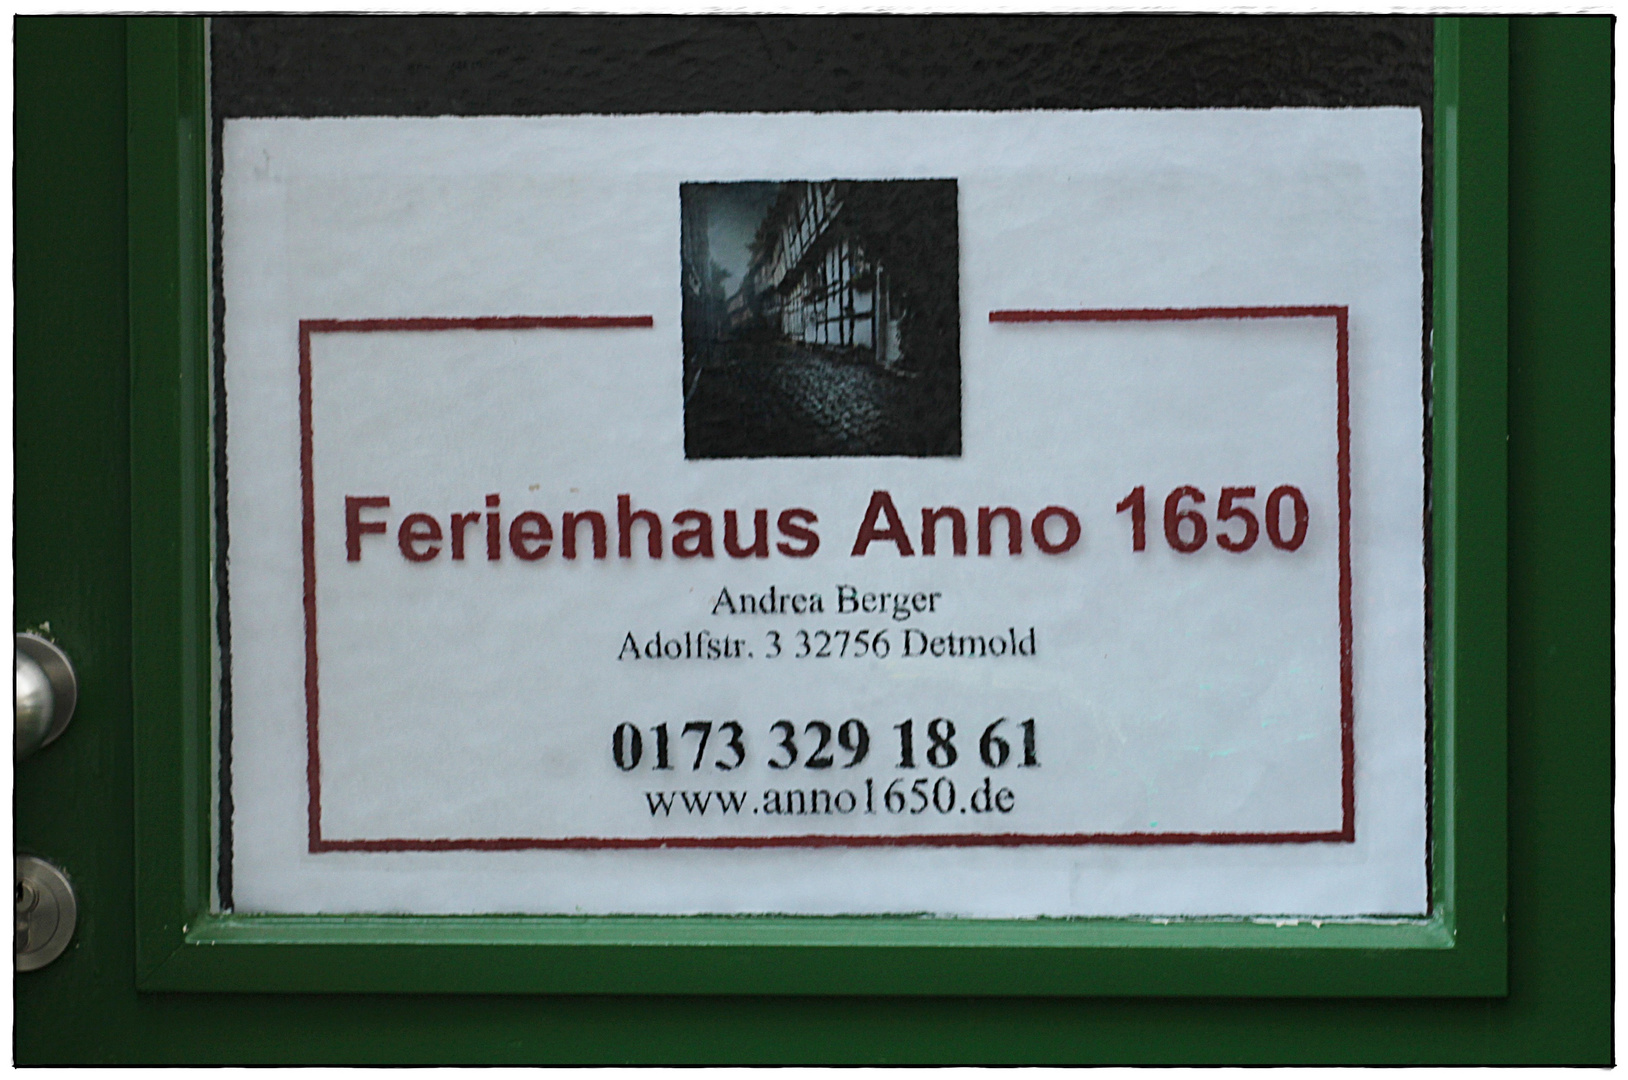 Ferienhaus Anno 1650